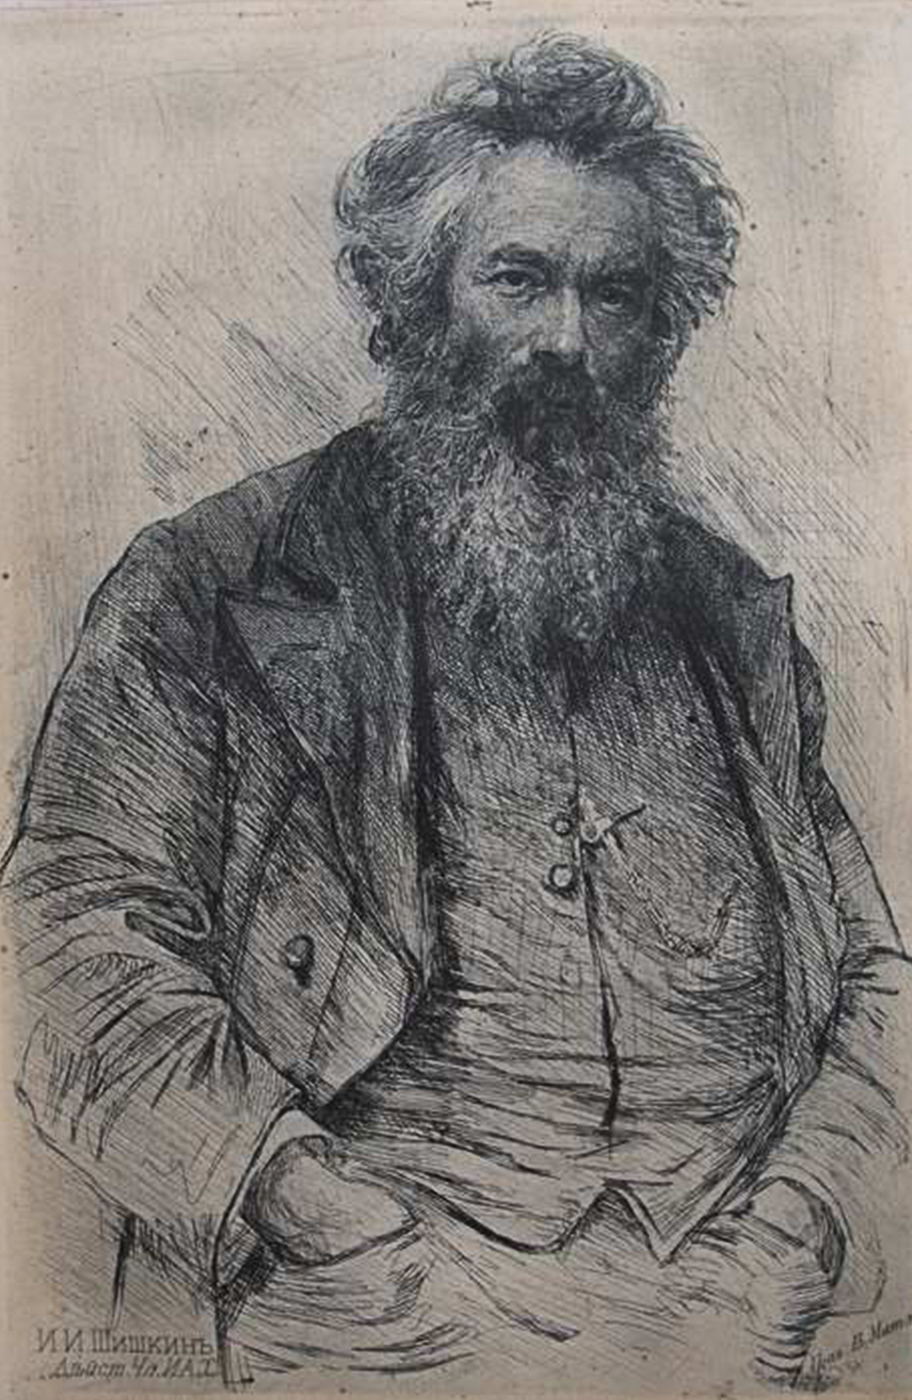 Матэ В.В. (1856-1917) Портрет И.И. Шишкина.Материал, техника:бумага, офорт